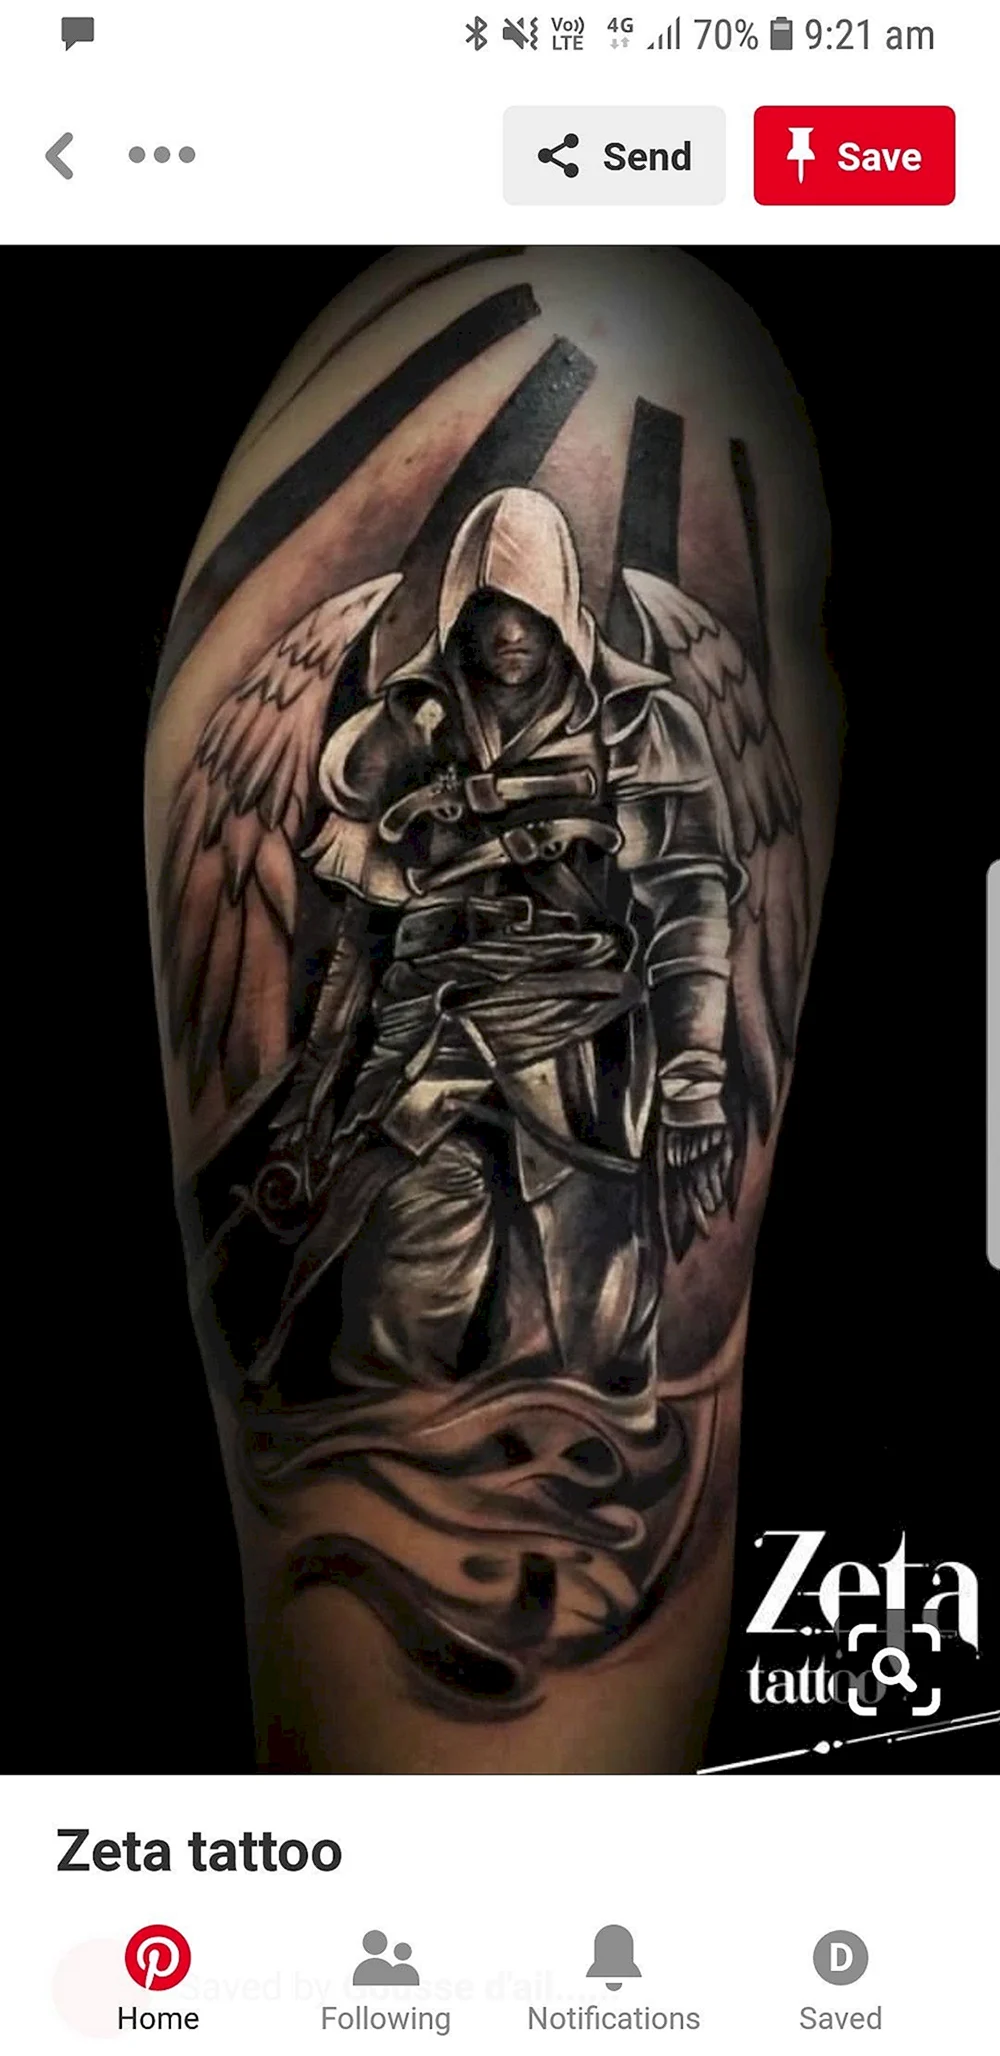 Knight Tattoo